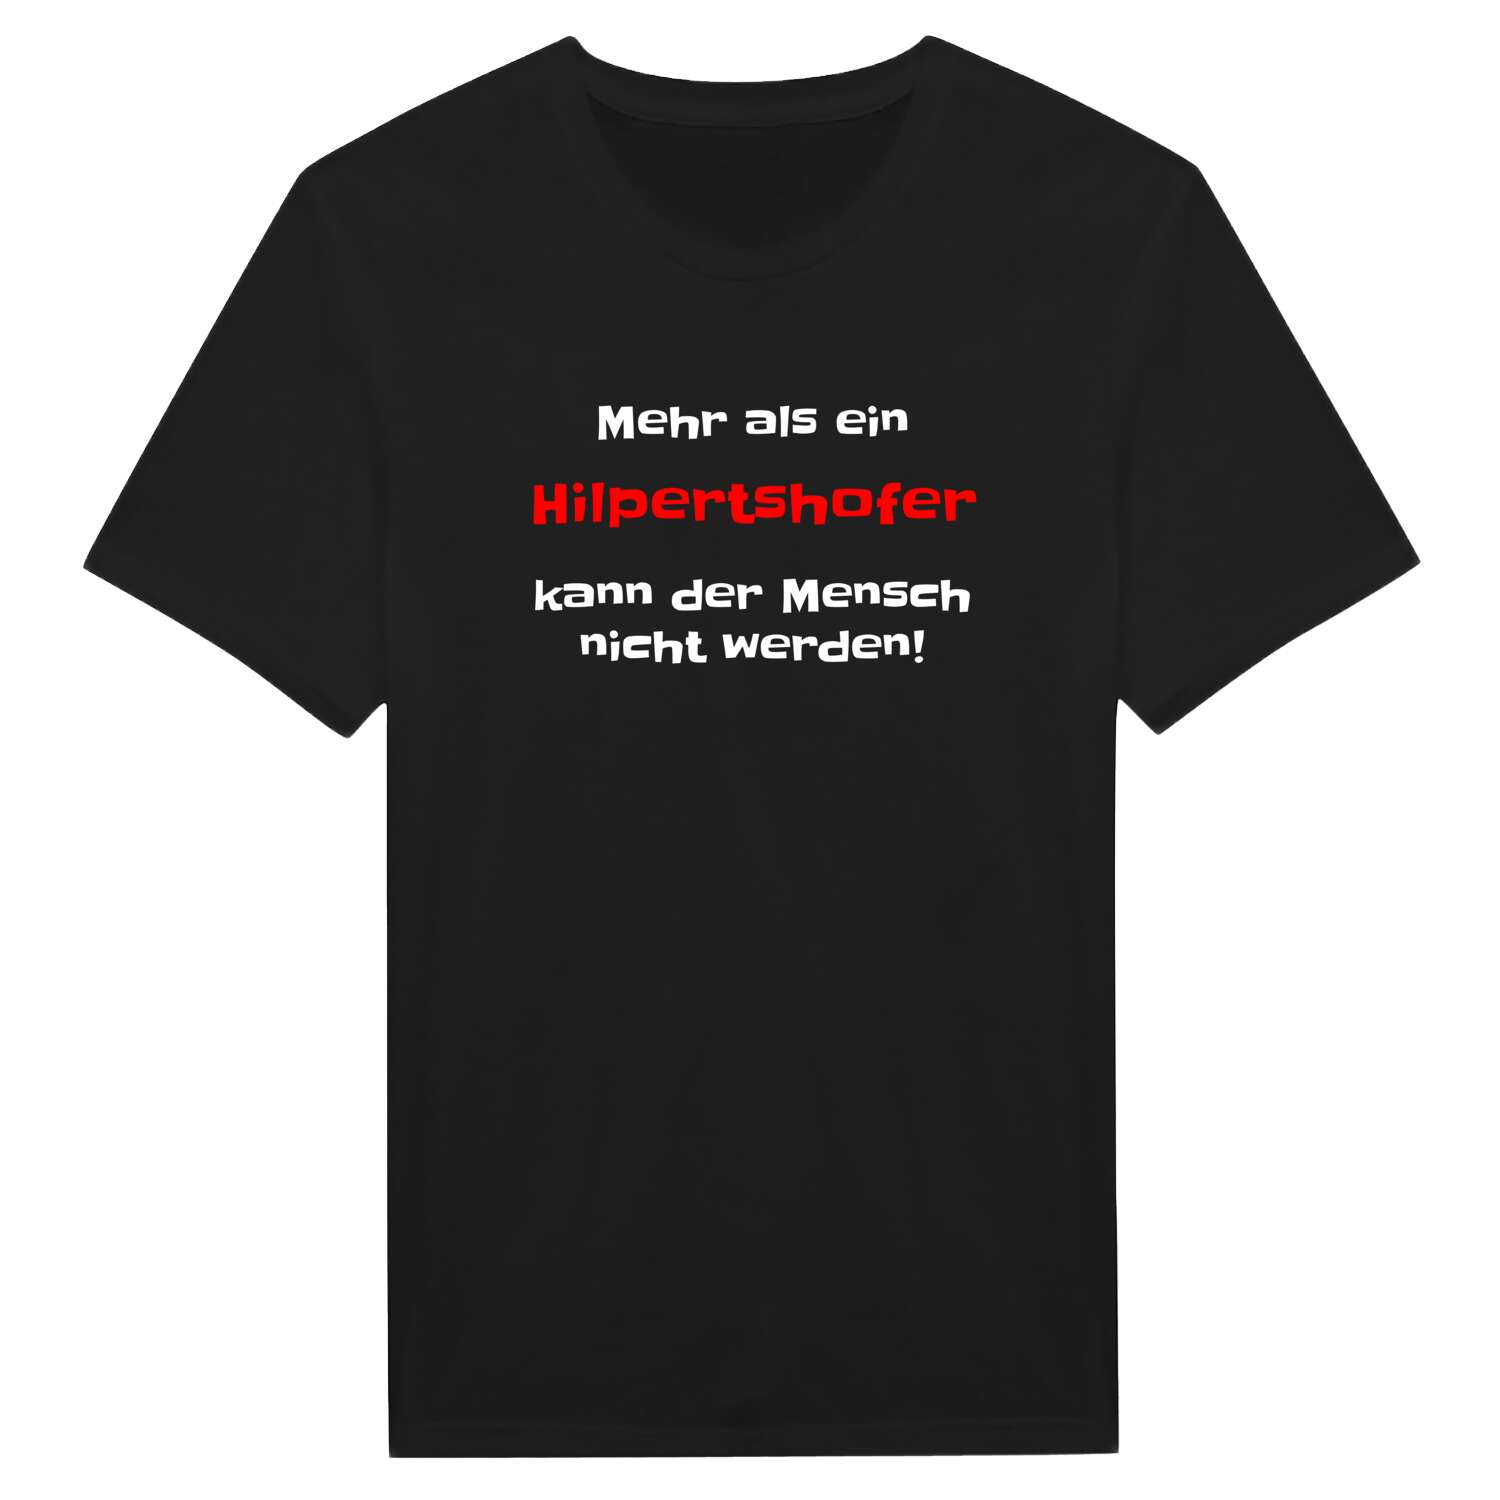 Hilpertshof T-Shirt »Mehr als ein«